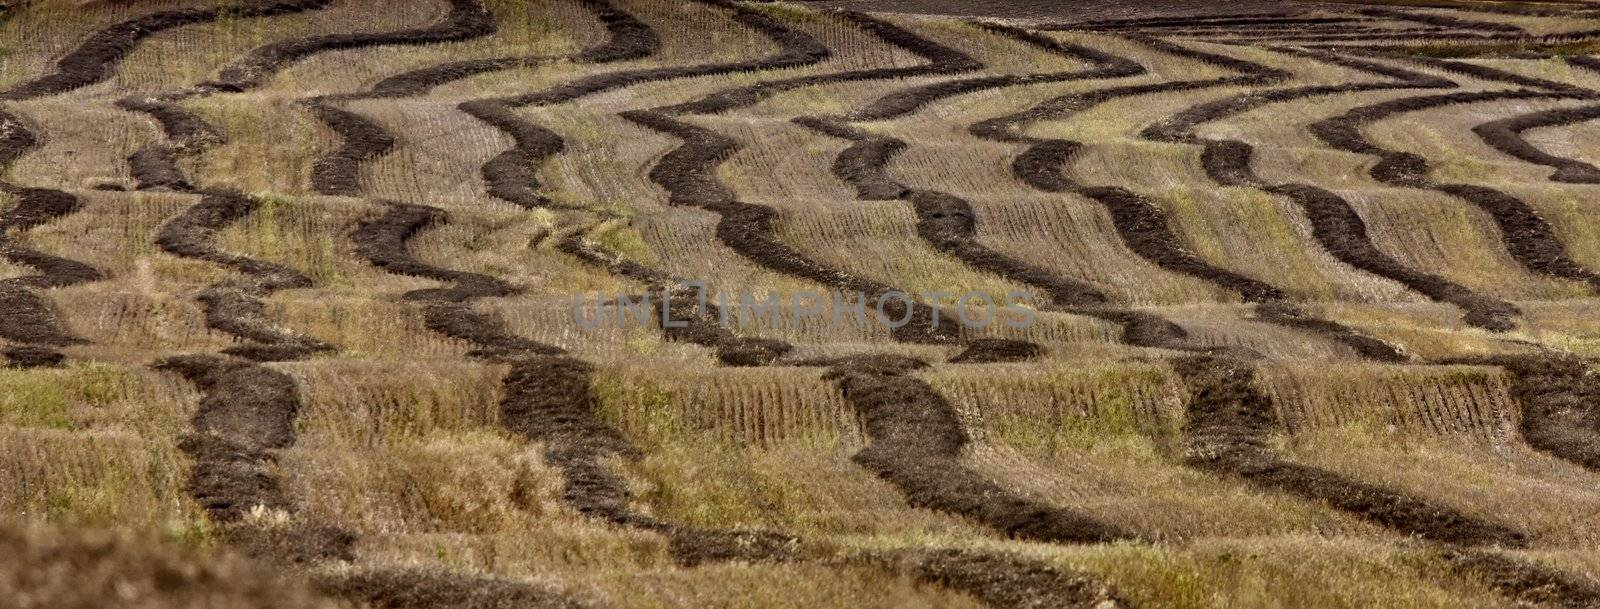 Wheat Field swath by pictureguy